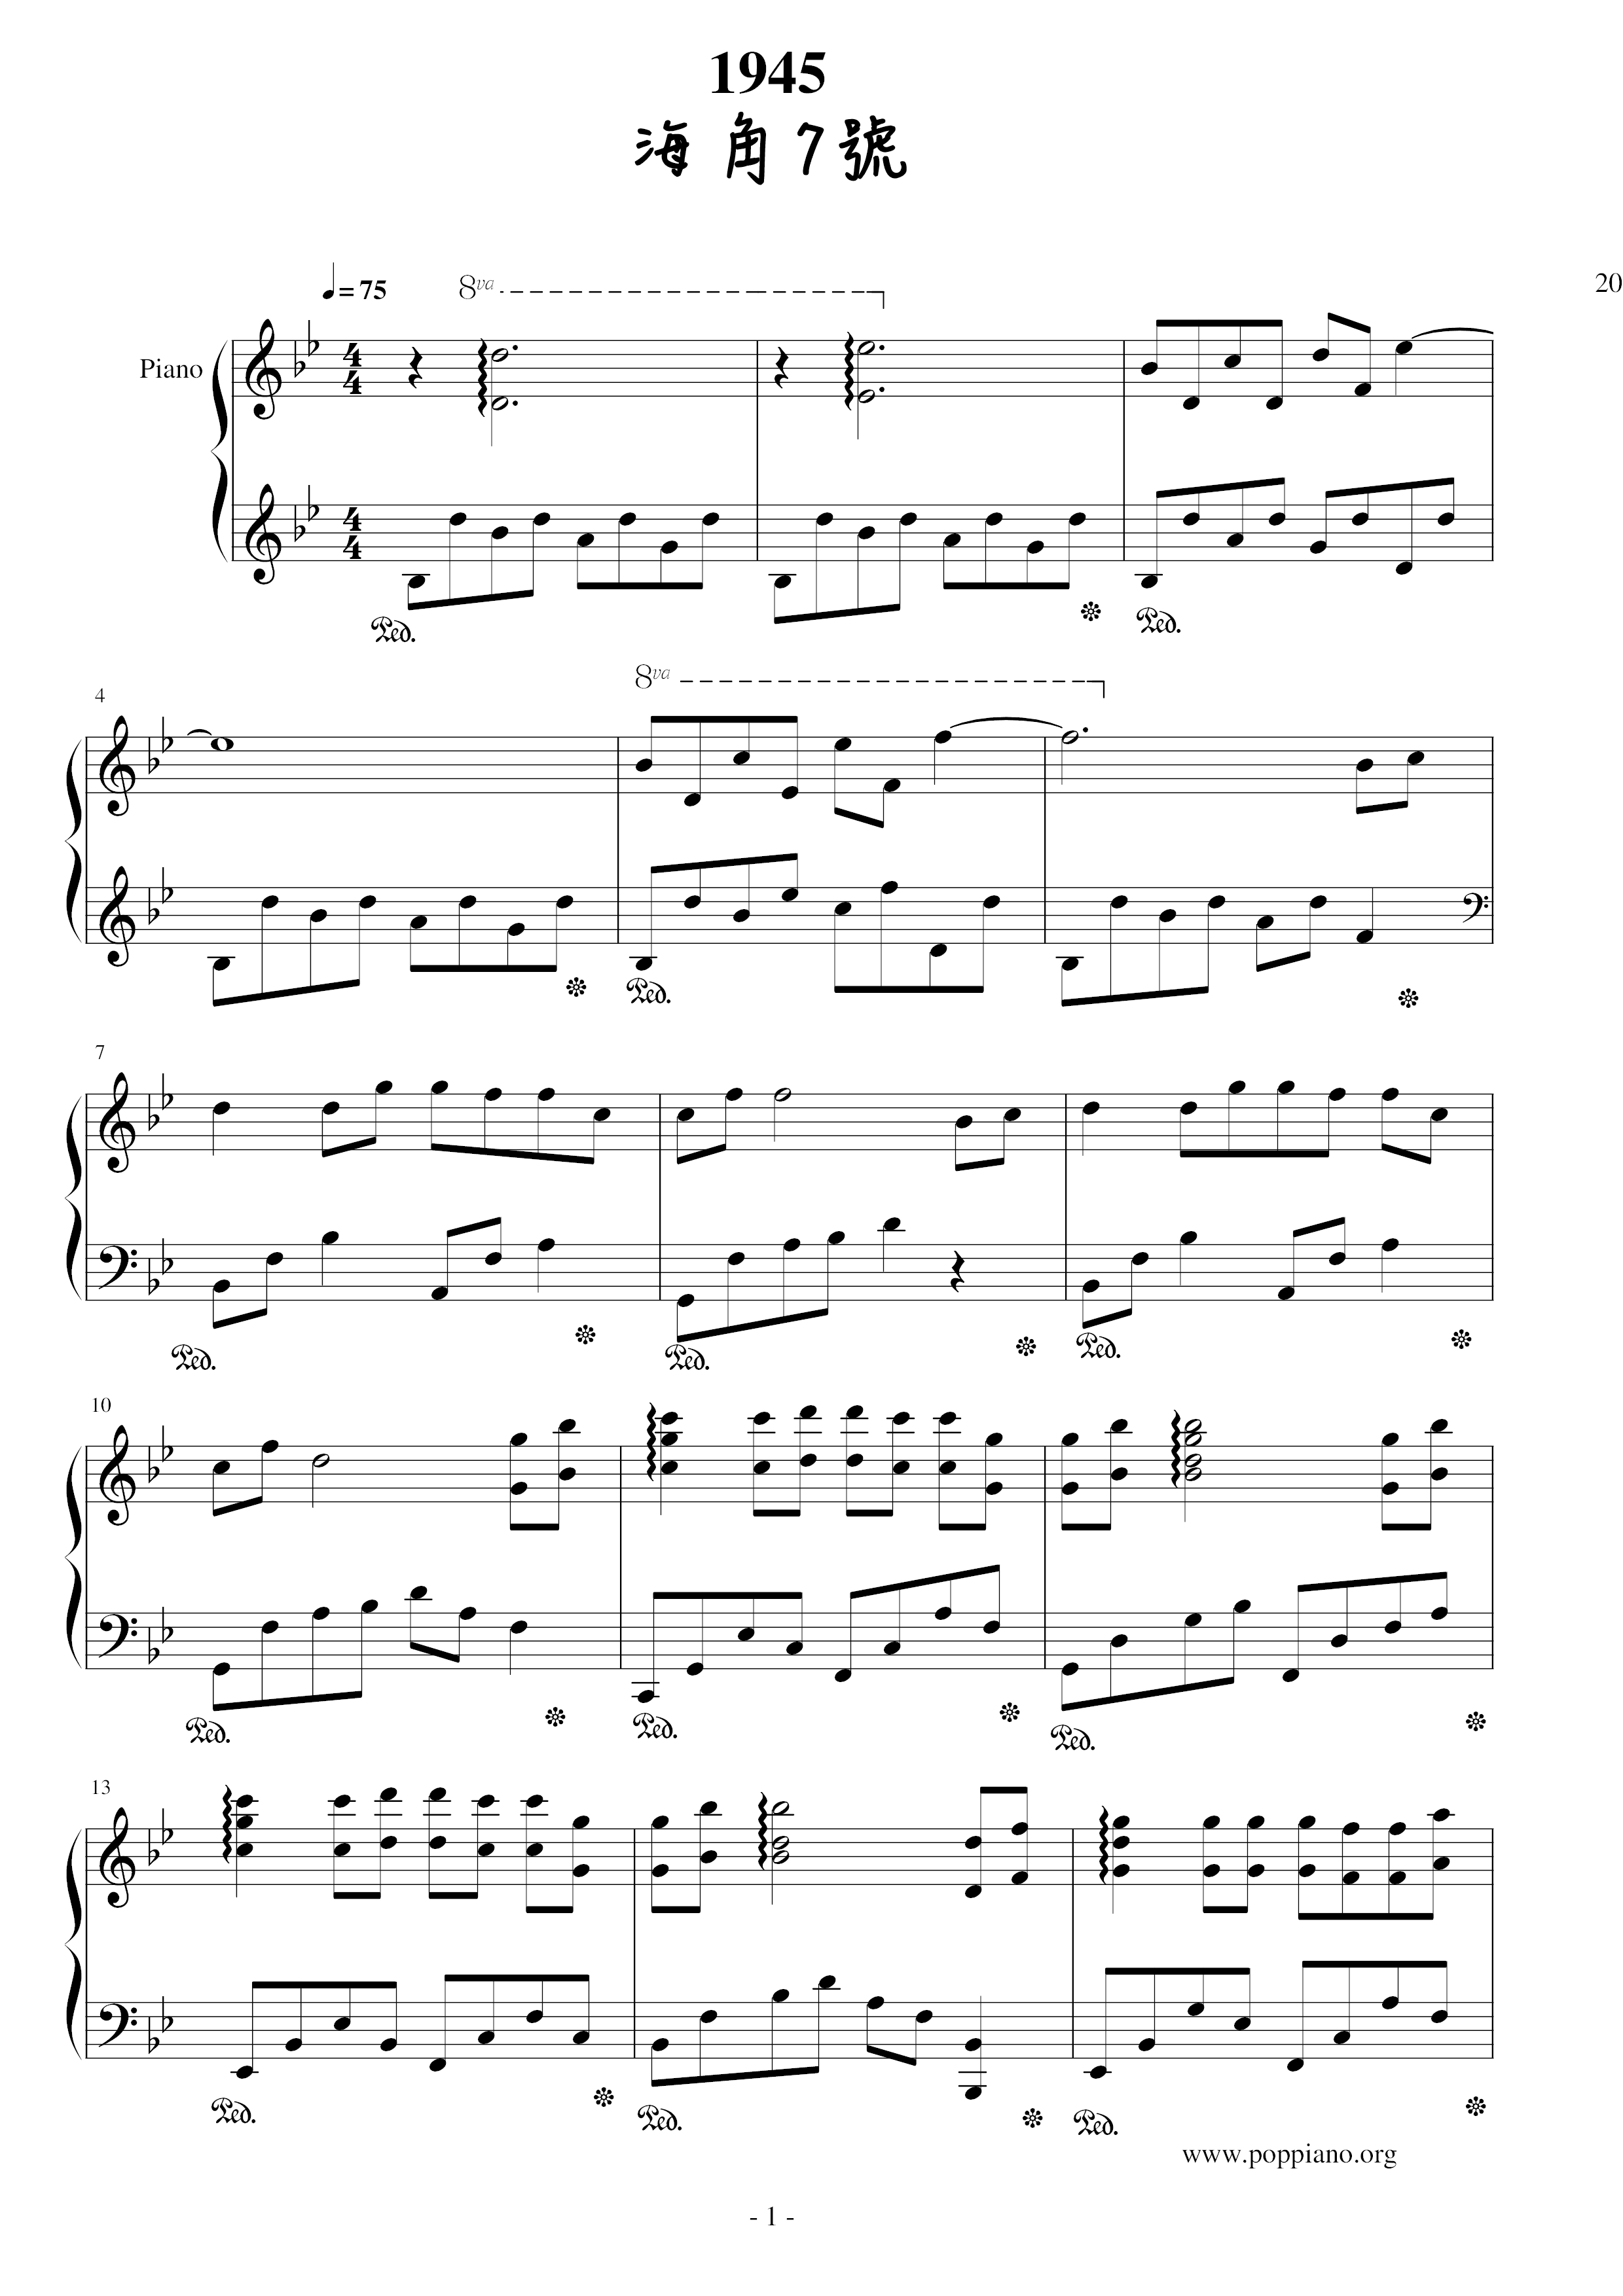 Cape Seven-1945 Year Score